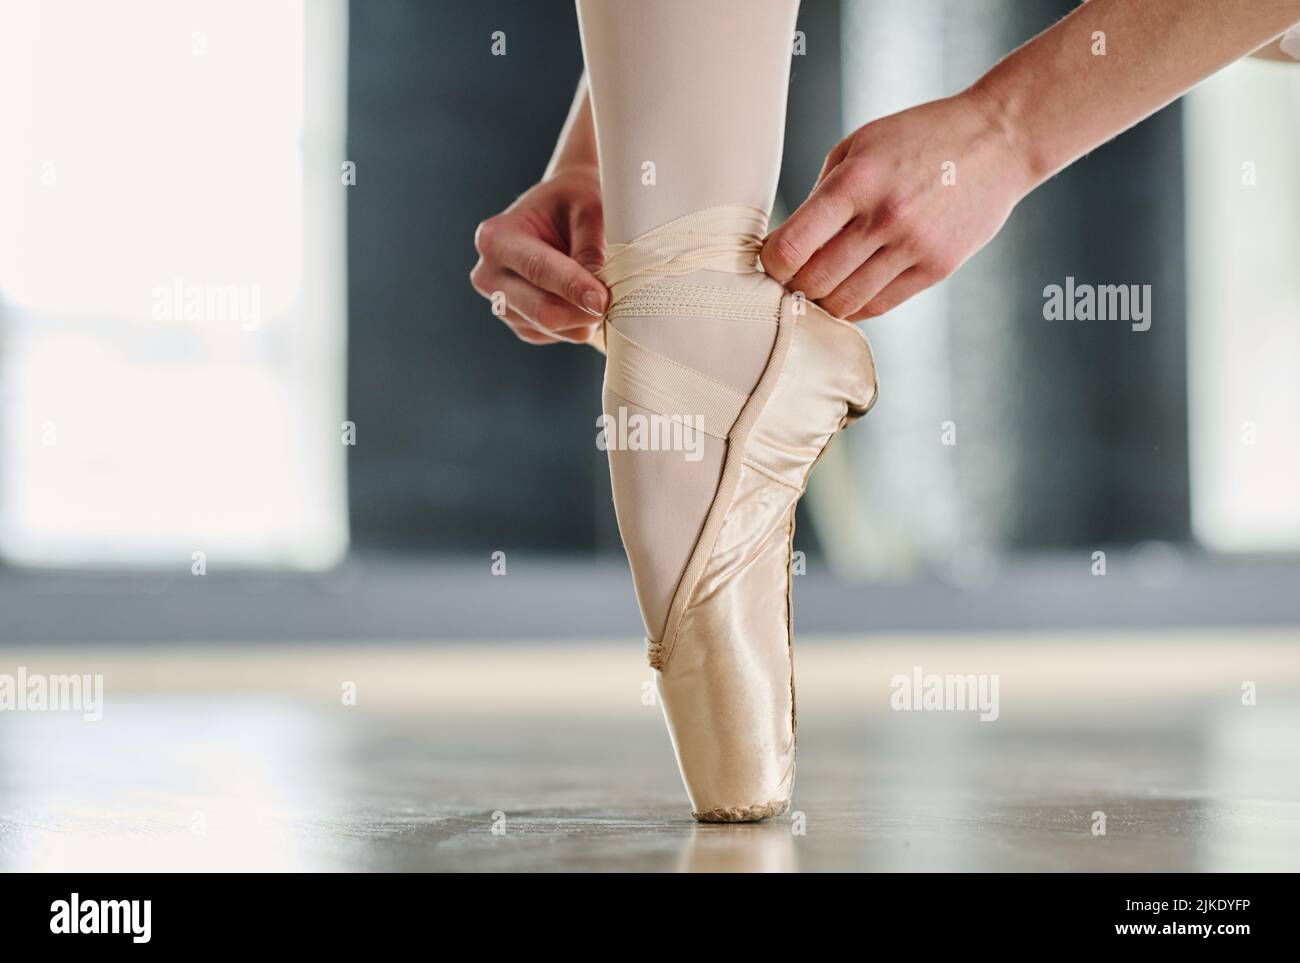 Mani di ballerina legano nastri di seta di scarpe pointe mantenendo il piede sulla punta del piede sul pavimento della sala da ballo o dell'aula per le ripetizioni Foto Stock